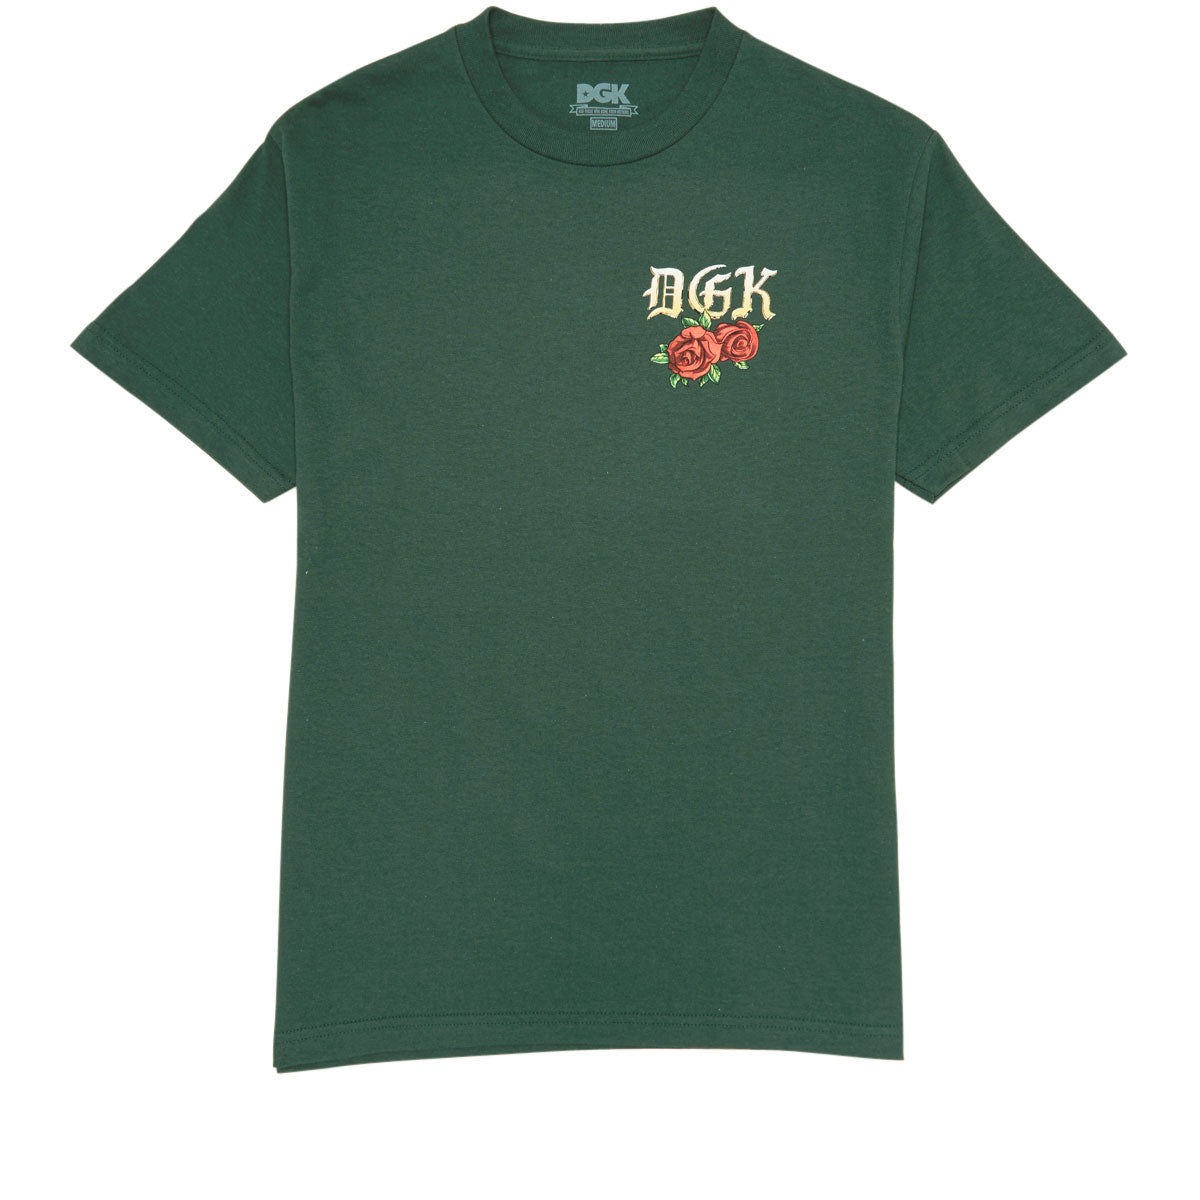 DGK Ridin' Dirty T-Shirt - Forest Green image 2